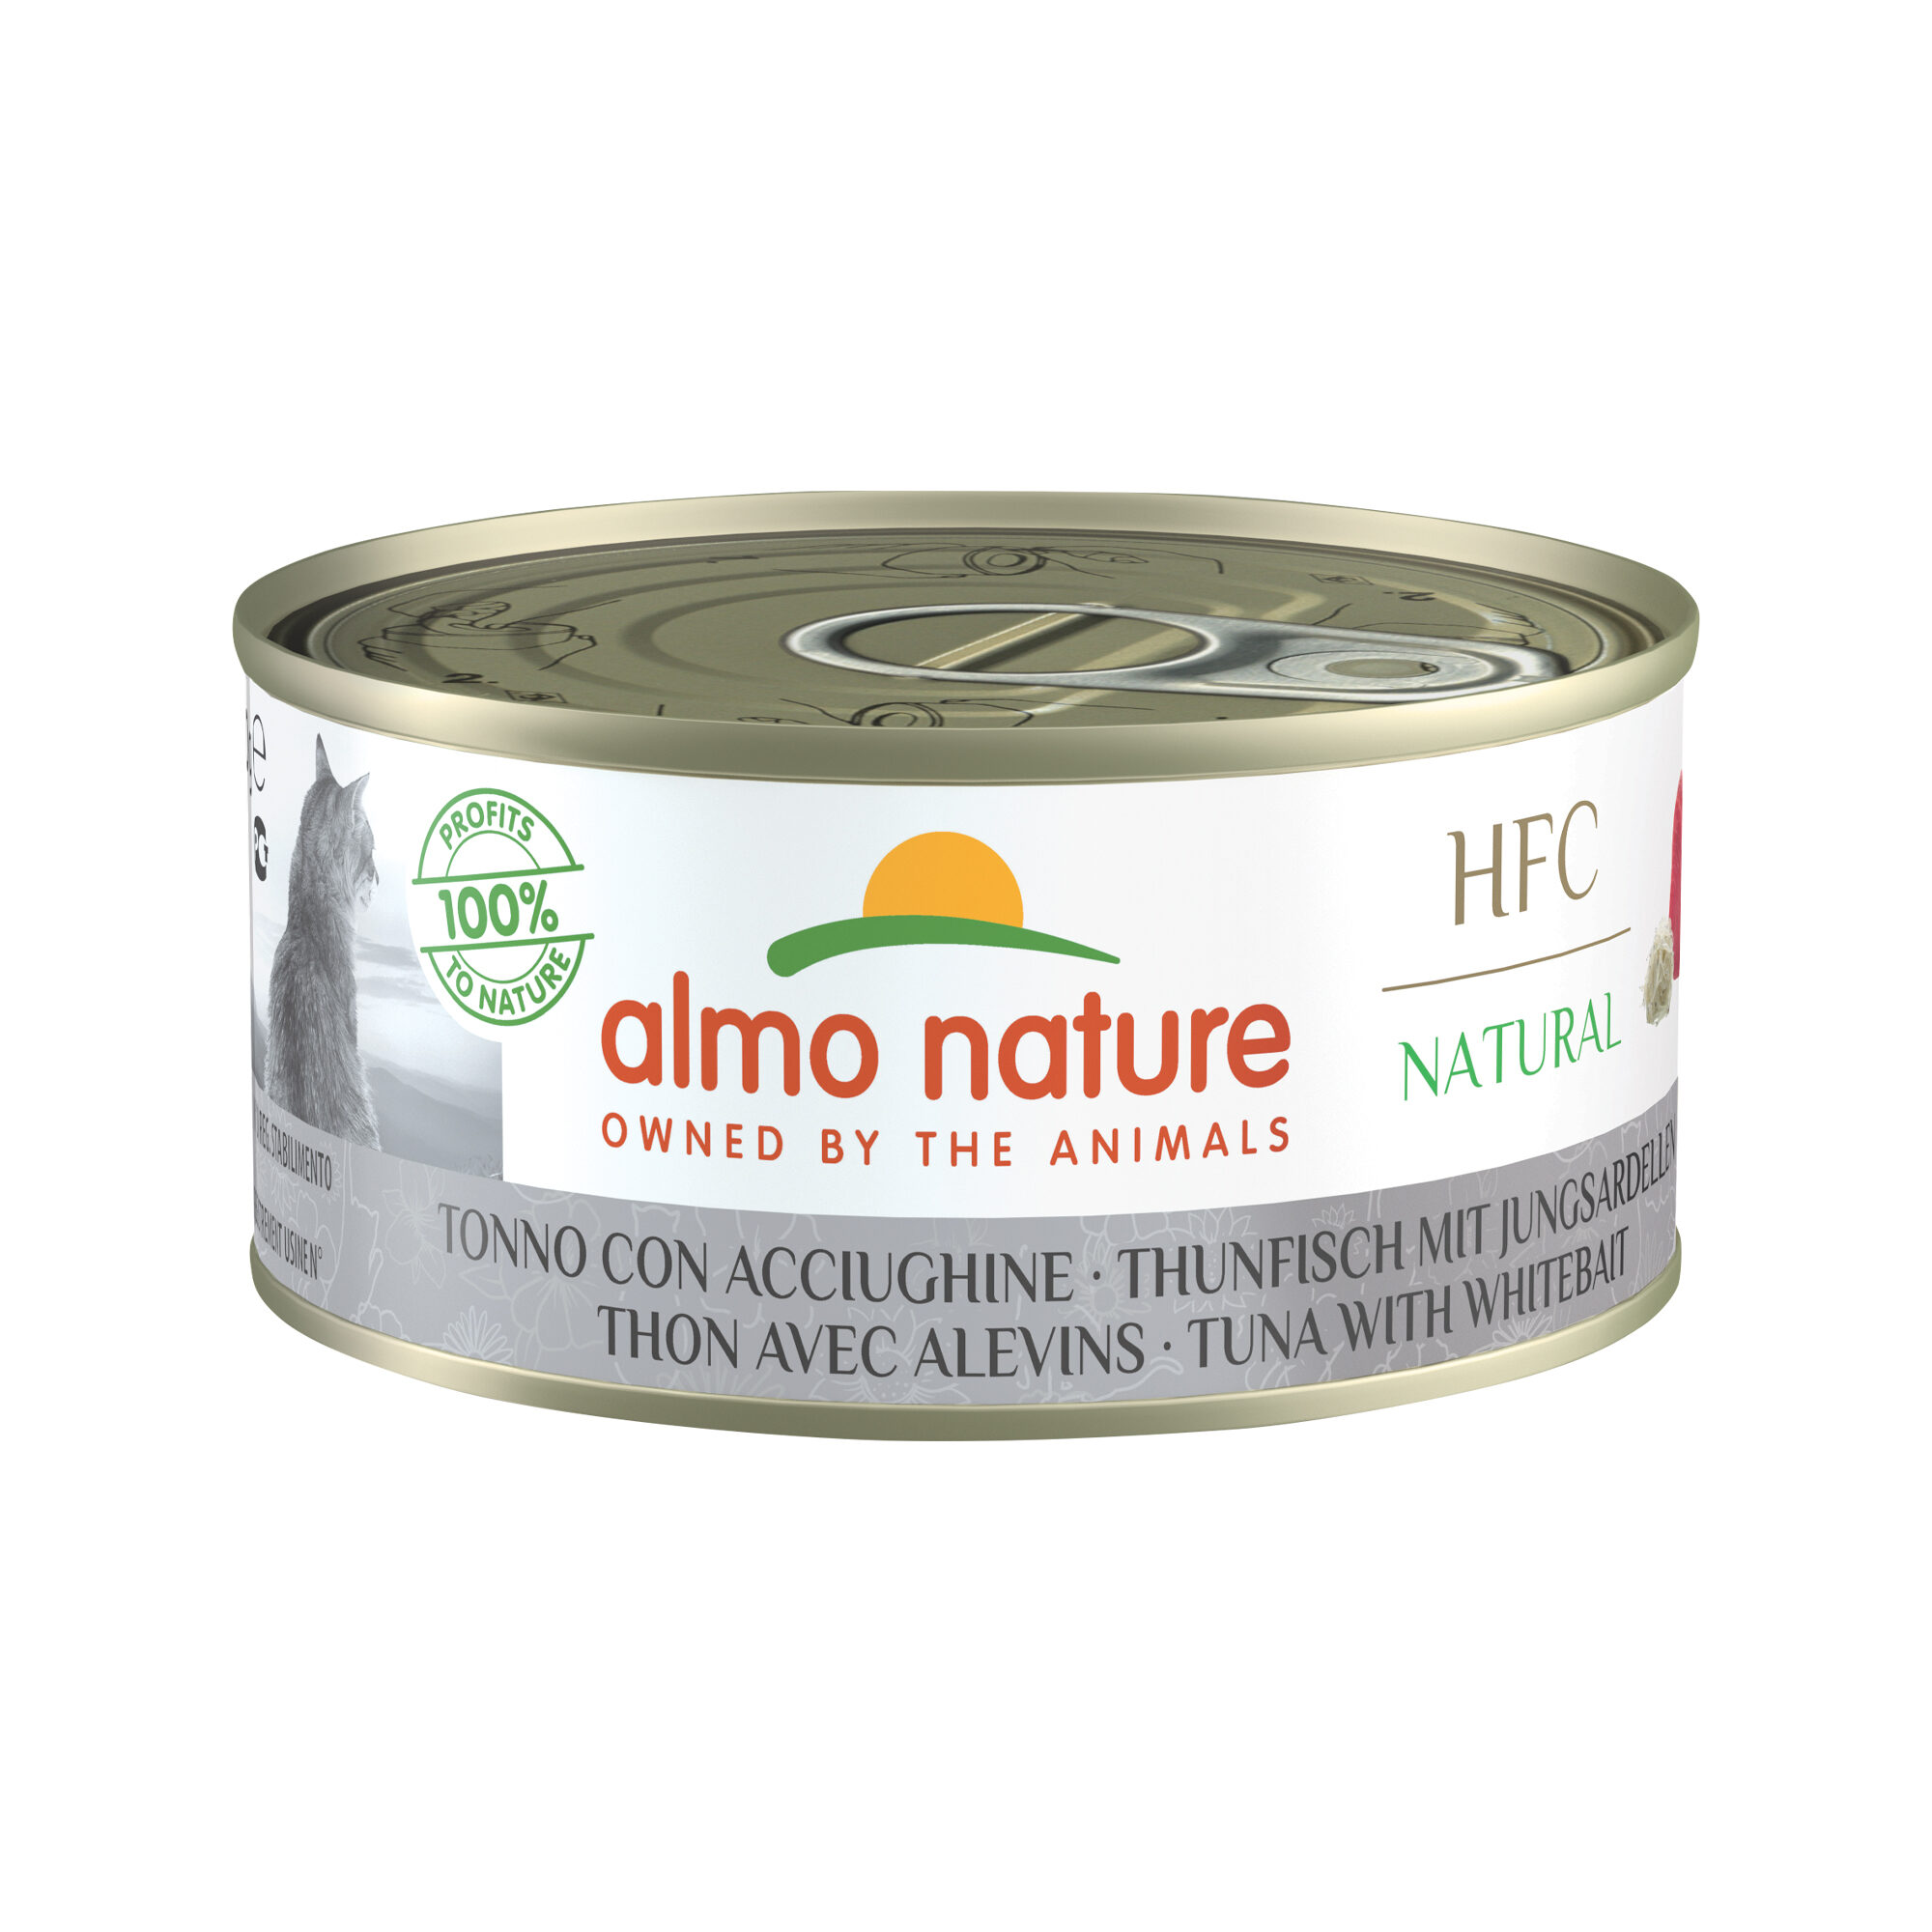 Almo Nature HFC 150 Natural - Thunfisch mit Jungsardellen - 24 x 150 g